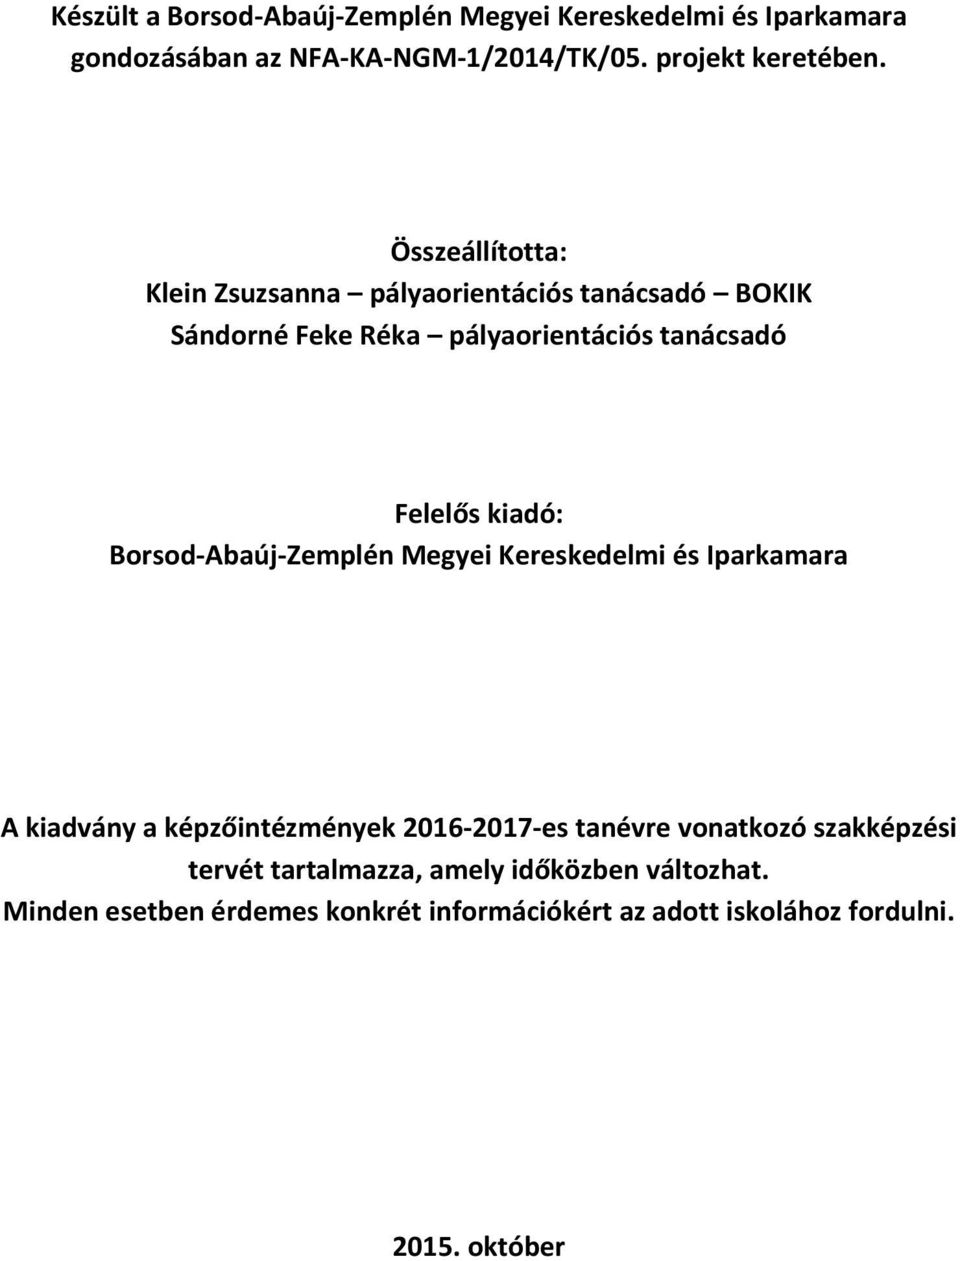 Borsod-Abaúj-Zemplén Megyei Kereskedelmi és Iparkamara A kiadvány a képzőintézmények 2016-2017-es tanévre vonatkozó szakképzési